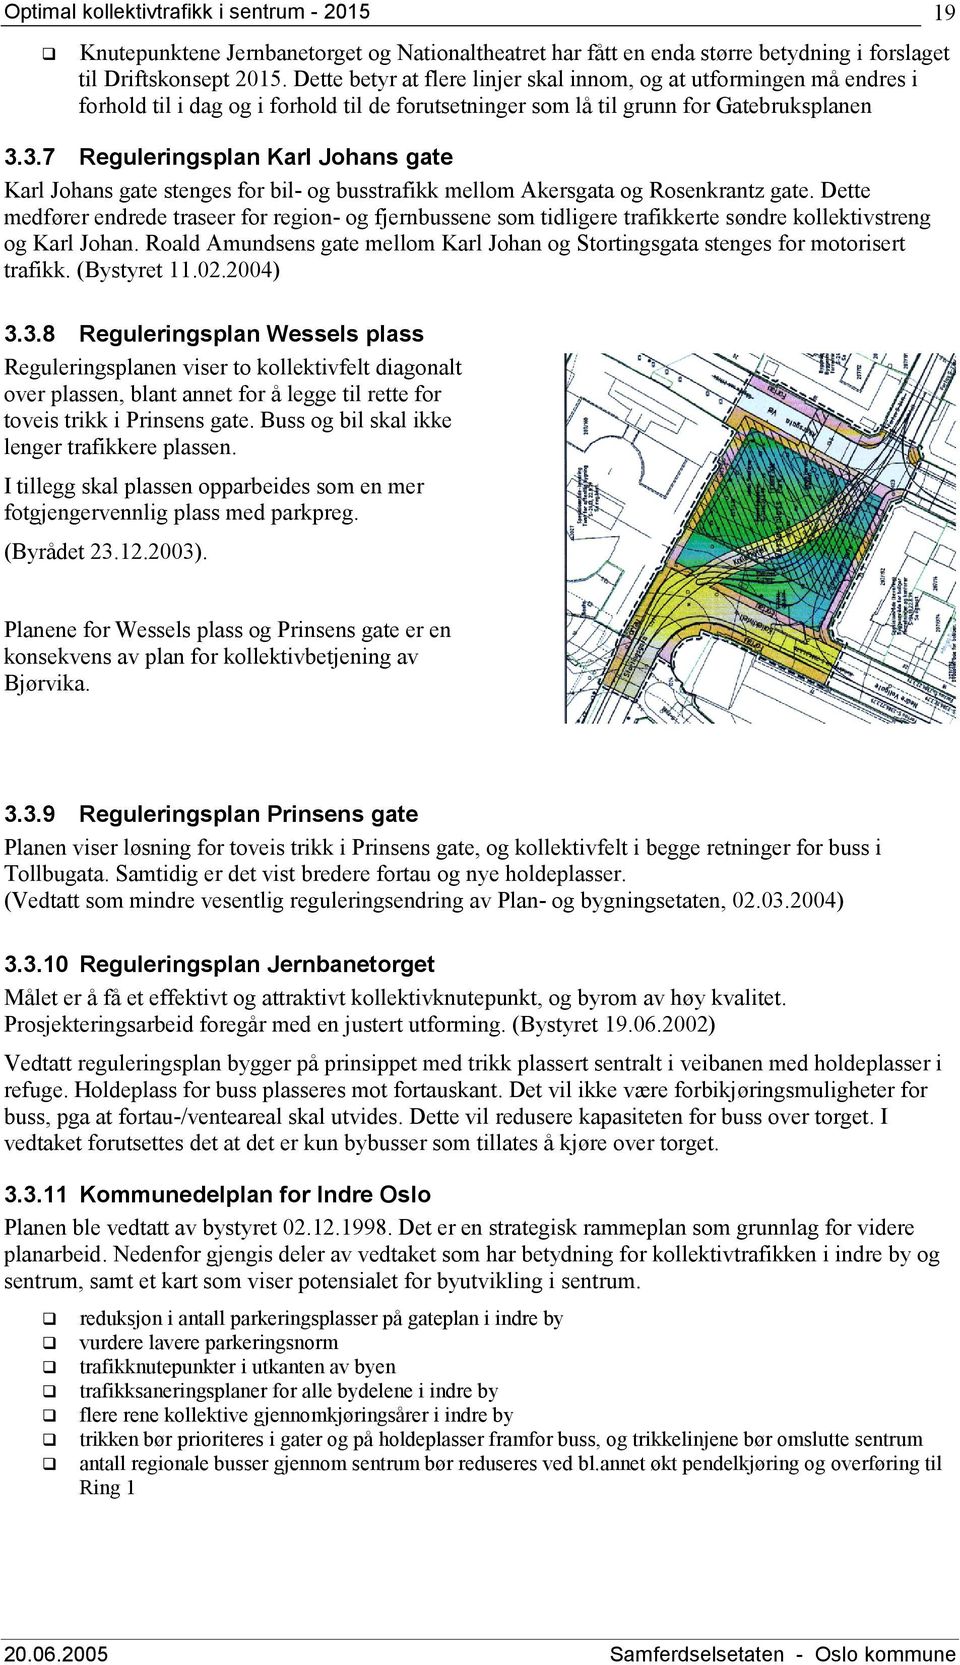 3.7 Reguleringsplan Karl Johans gate Karl Johans gate stenges for bil- og busstrafikk mellom Akersgata og Rosenkrantz gate.